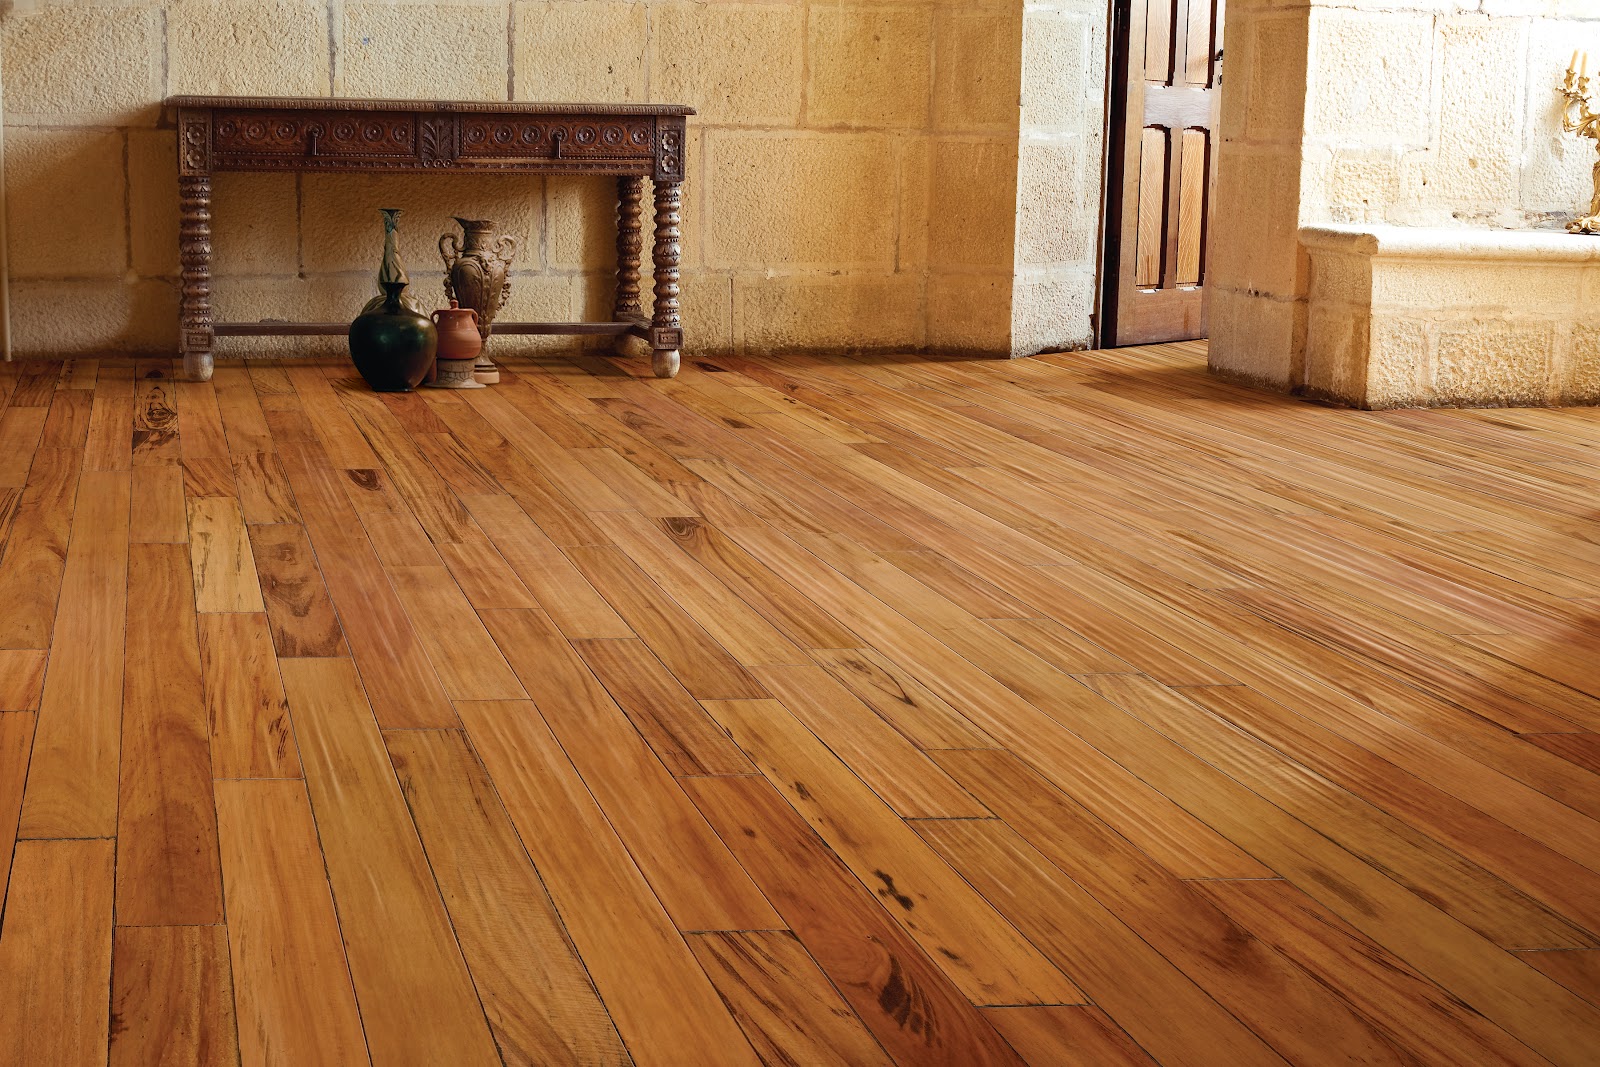 wooden floor tiles